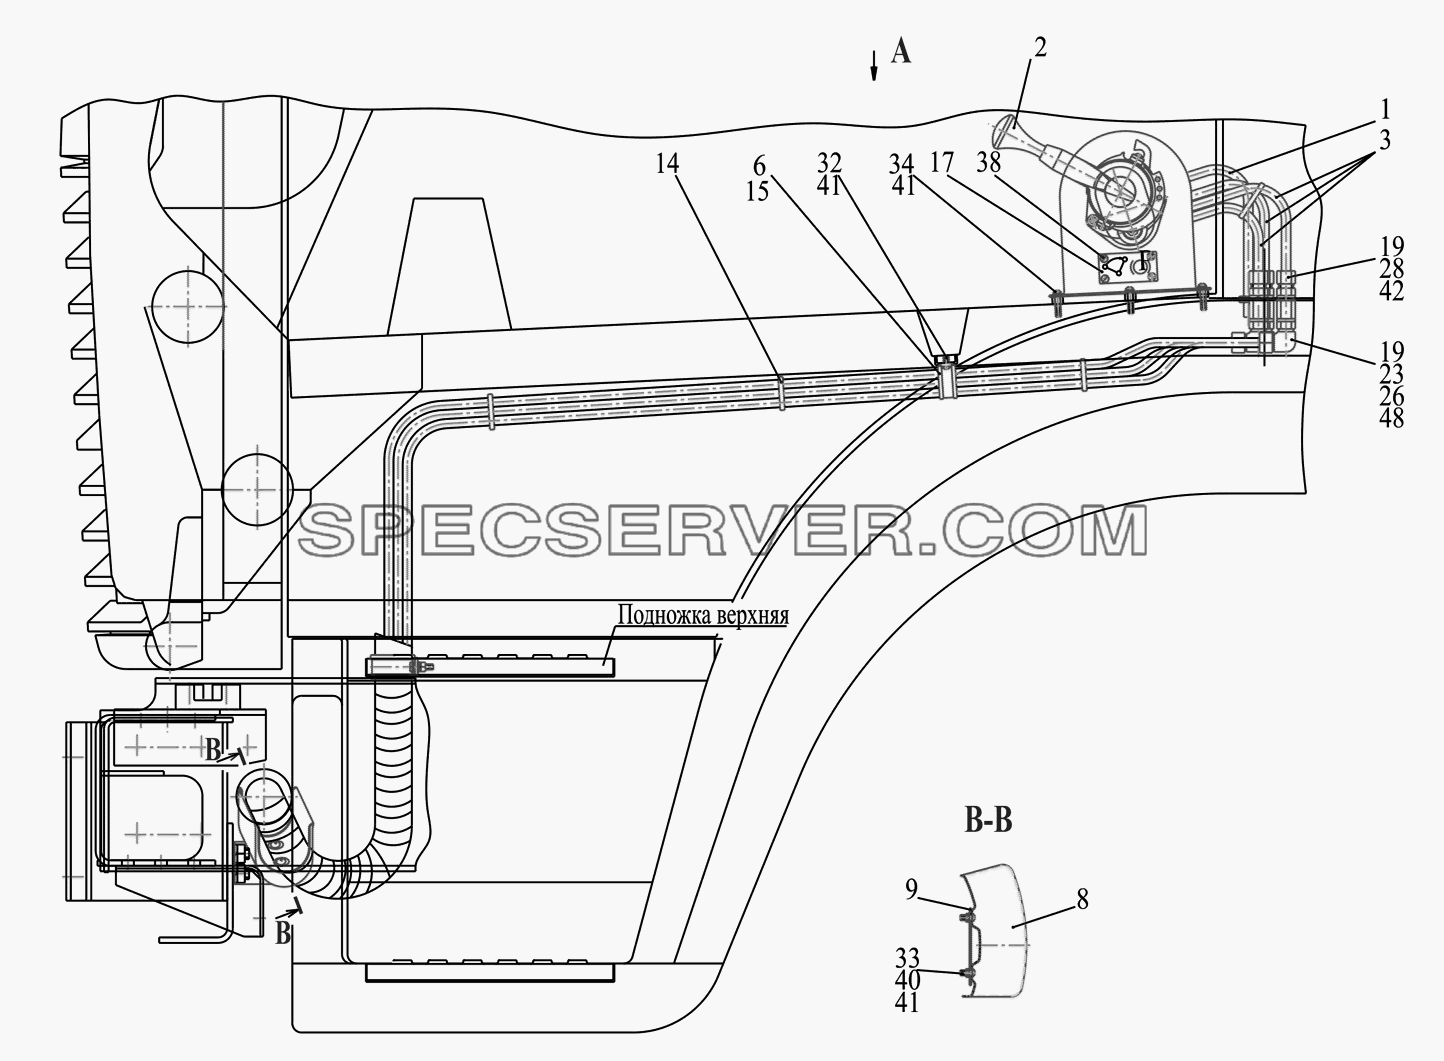 Привод стояночного тормоза P437041-3537004 для МАЗ-437041 (список запасных частей)